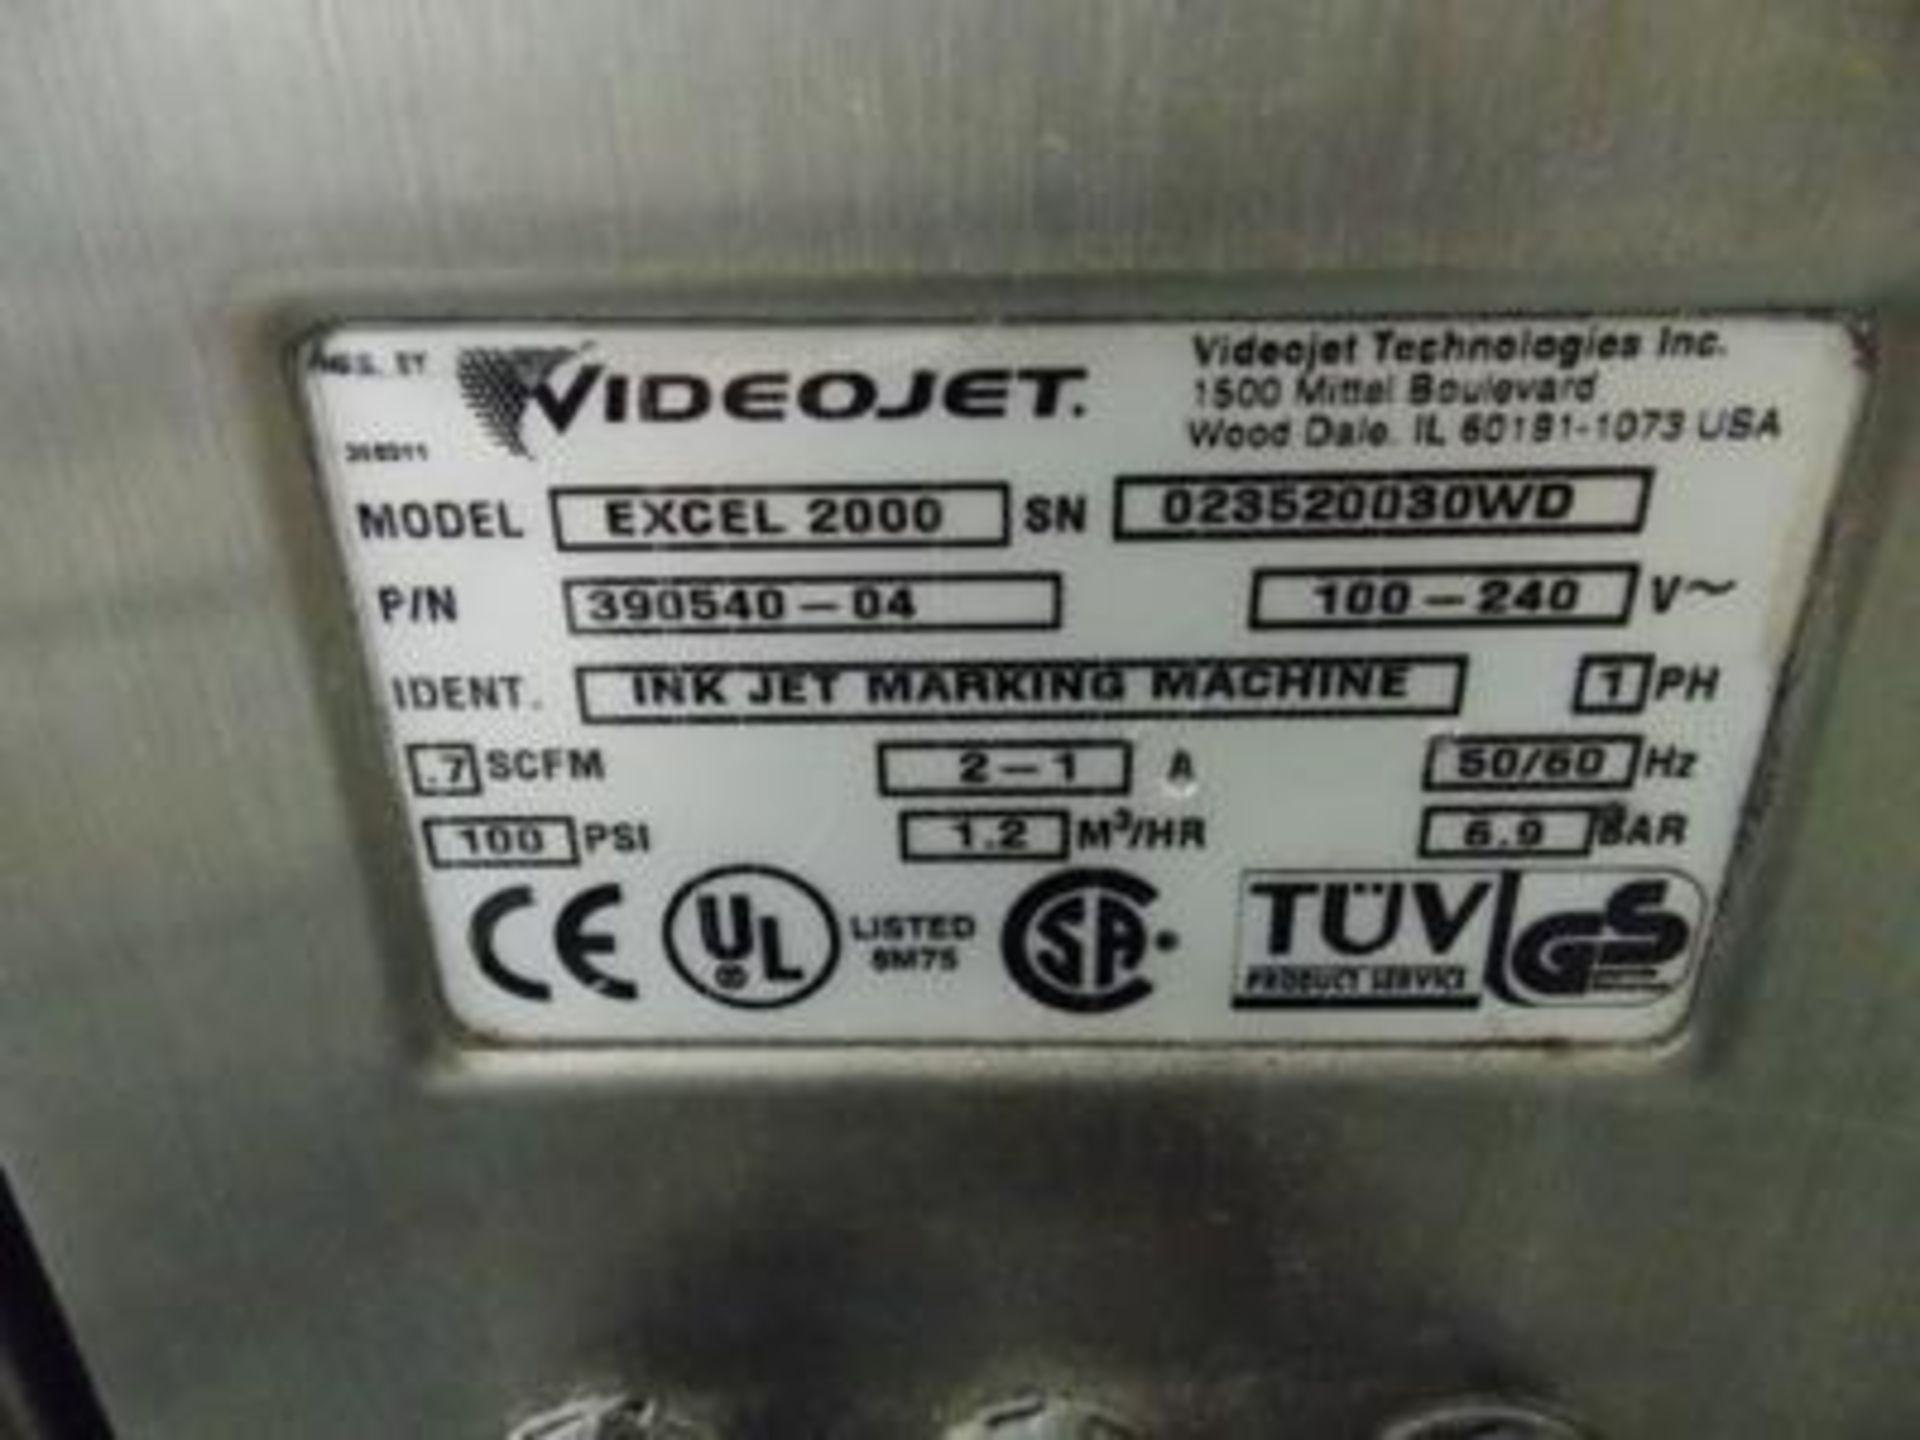 Video Jet ink jet coder - EXCEL 2000 / SN 023520030WD - Image 2 of 2